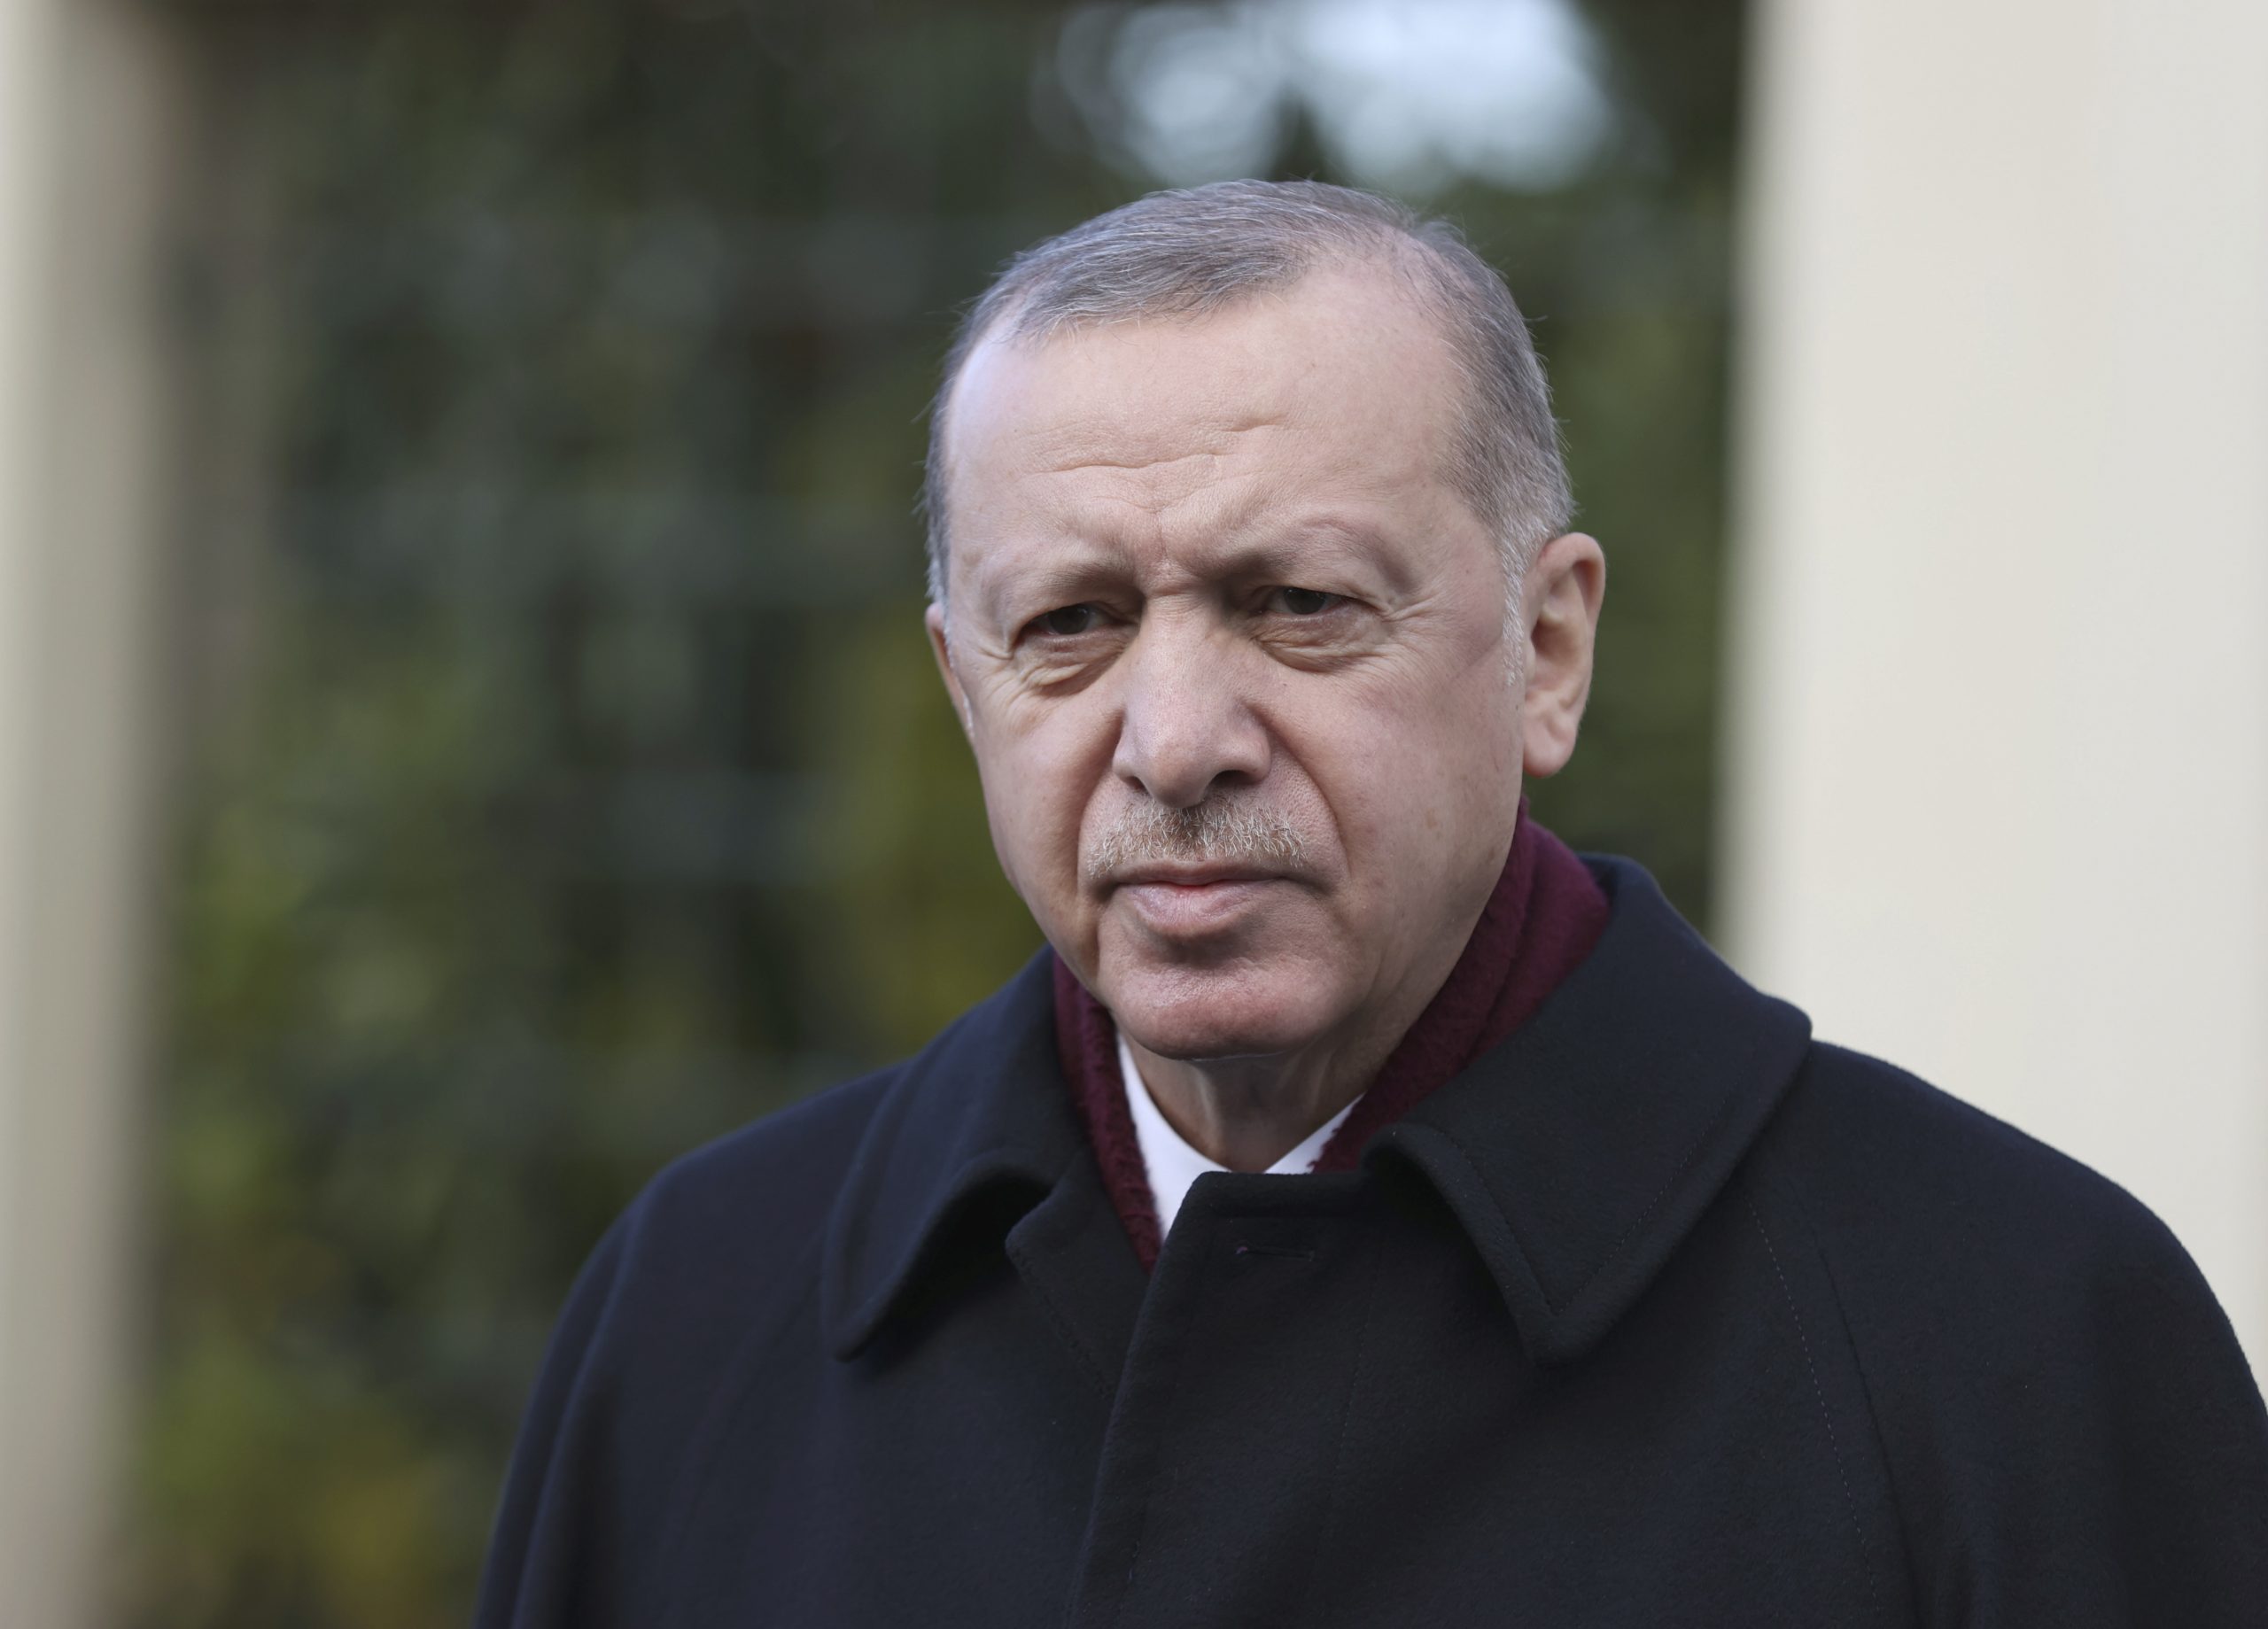 Erdogan kaže da provokatori stoje iza studentskih demonstracija u Turskoj 1